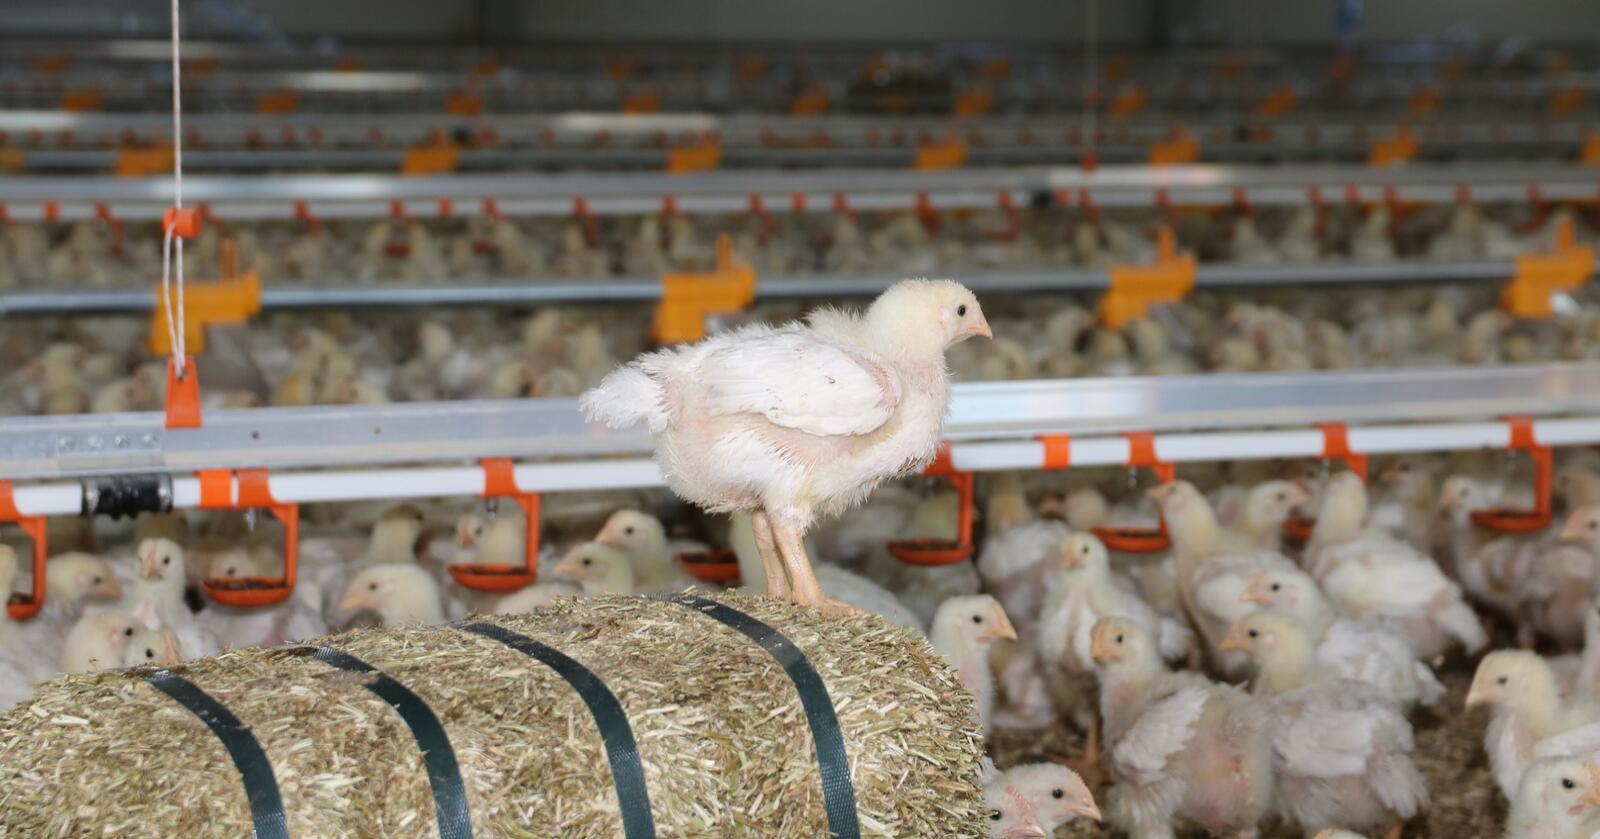 Hubbard: I 2018 lanserte Rema 1000 kyllingrasen Hubbard. Den bruker vel ei uke lengre tid på å nå slaktevekta enn Ross-kyllingen, og Rema reklamerte med at den gjør norsk kyllingproduksjon mer dyrevennlig. (Foto: Øystein Heggdal)